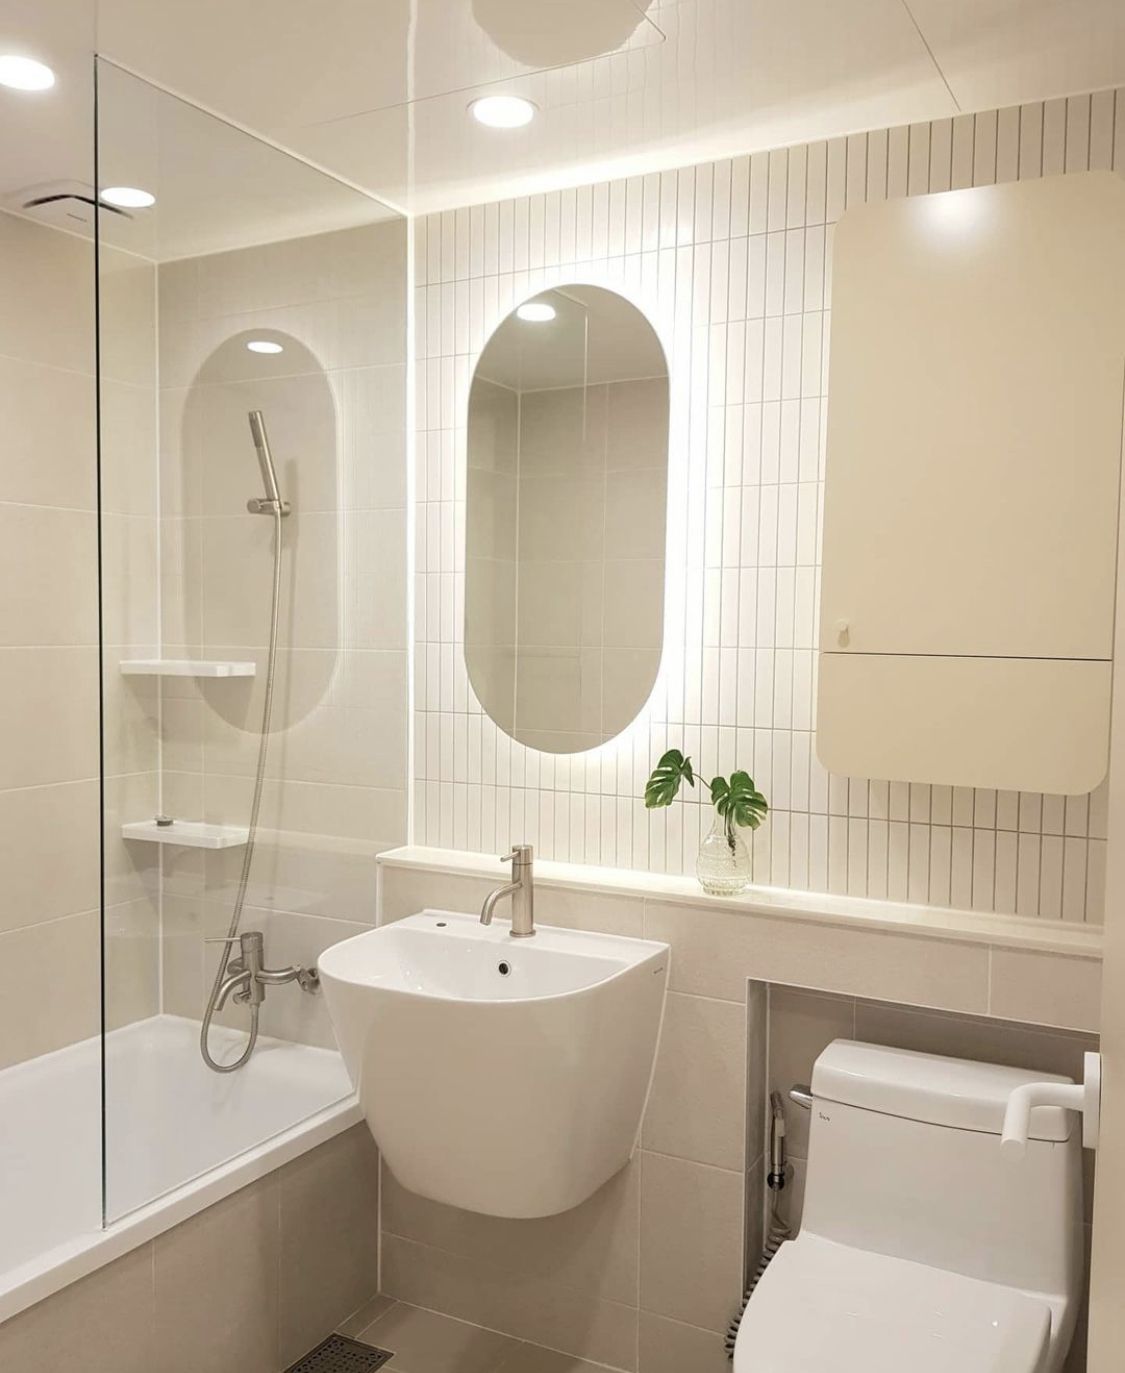 Vách ngăn vệ sinh đem lại hình ảnh đẹp cho phòng tắm gia đình